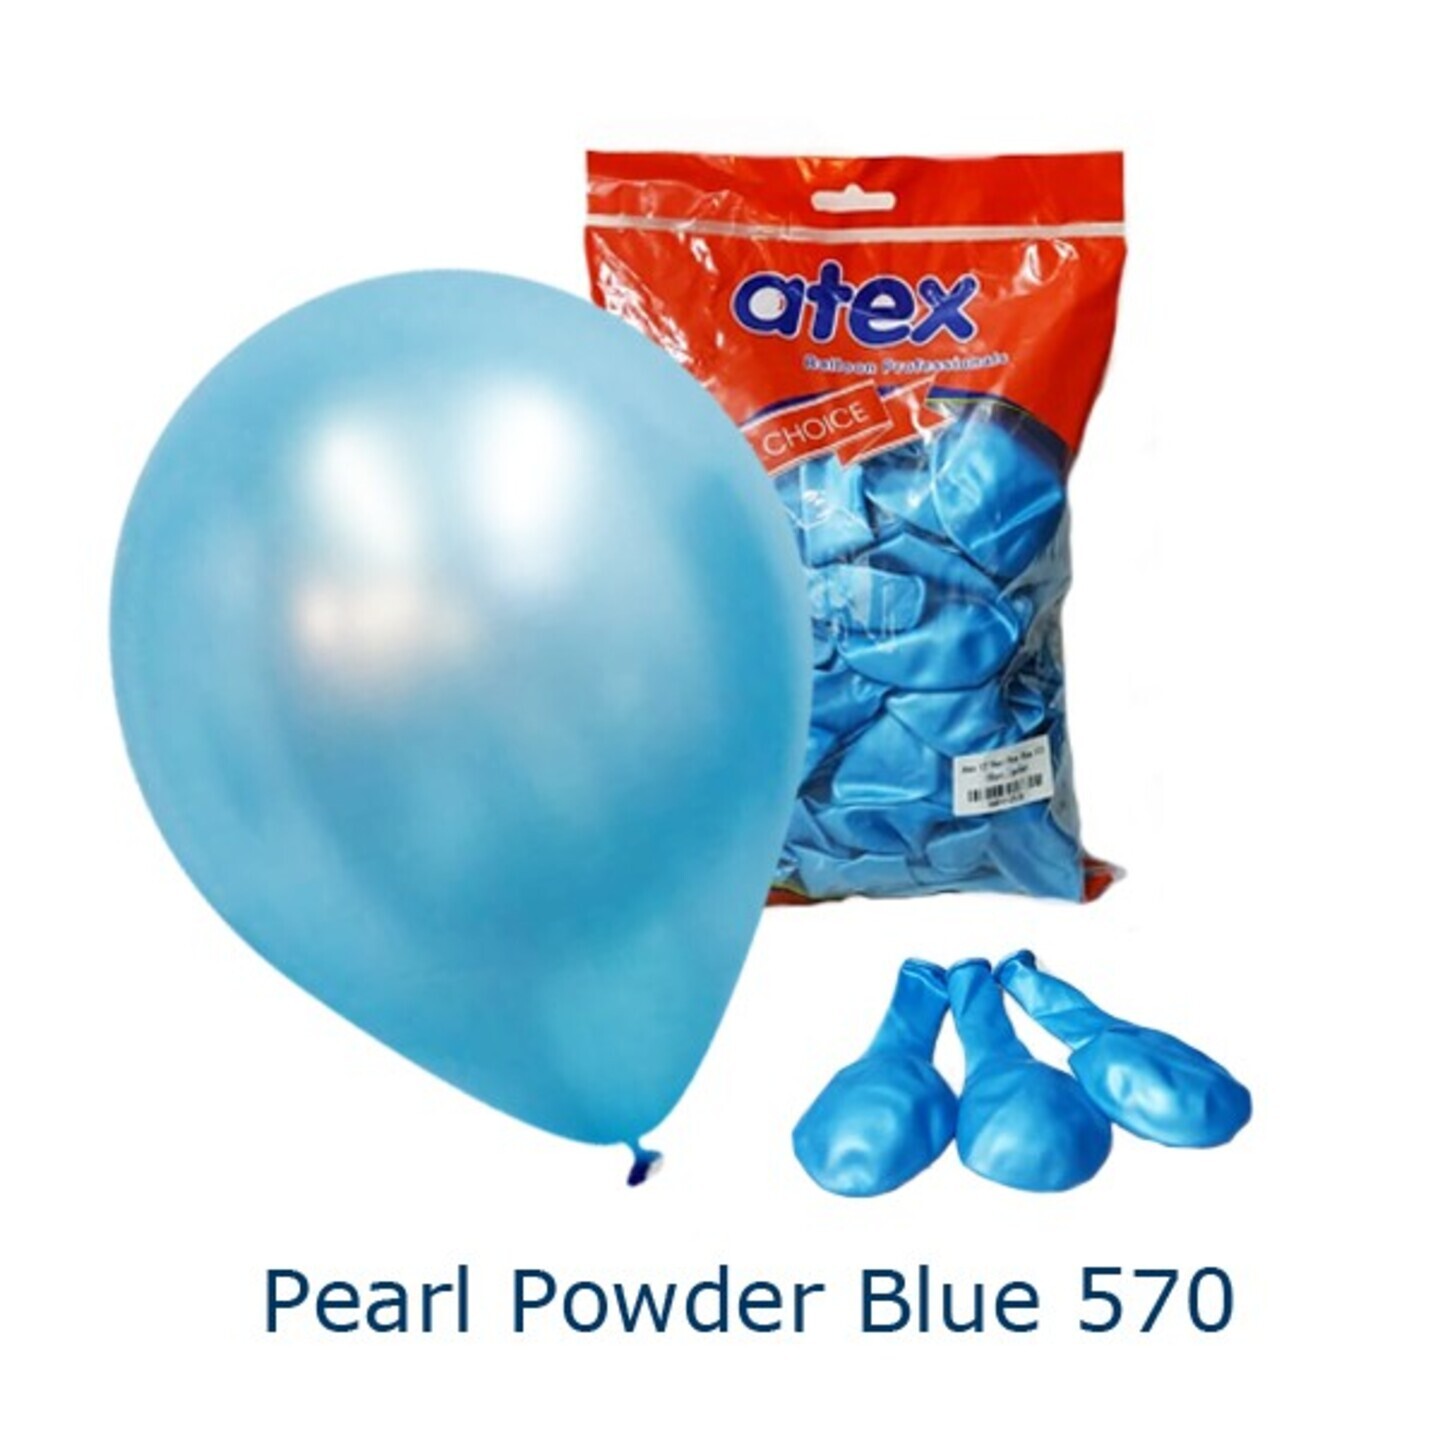 Pearl Powder Blue 570